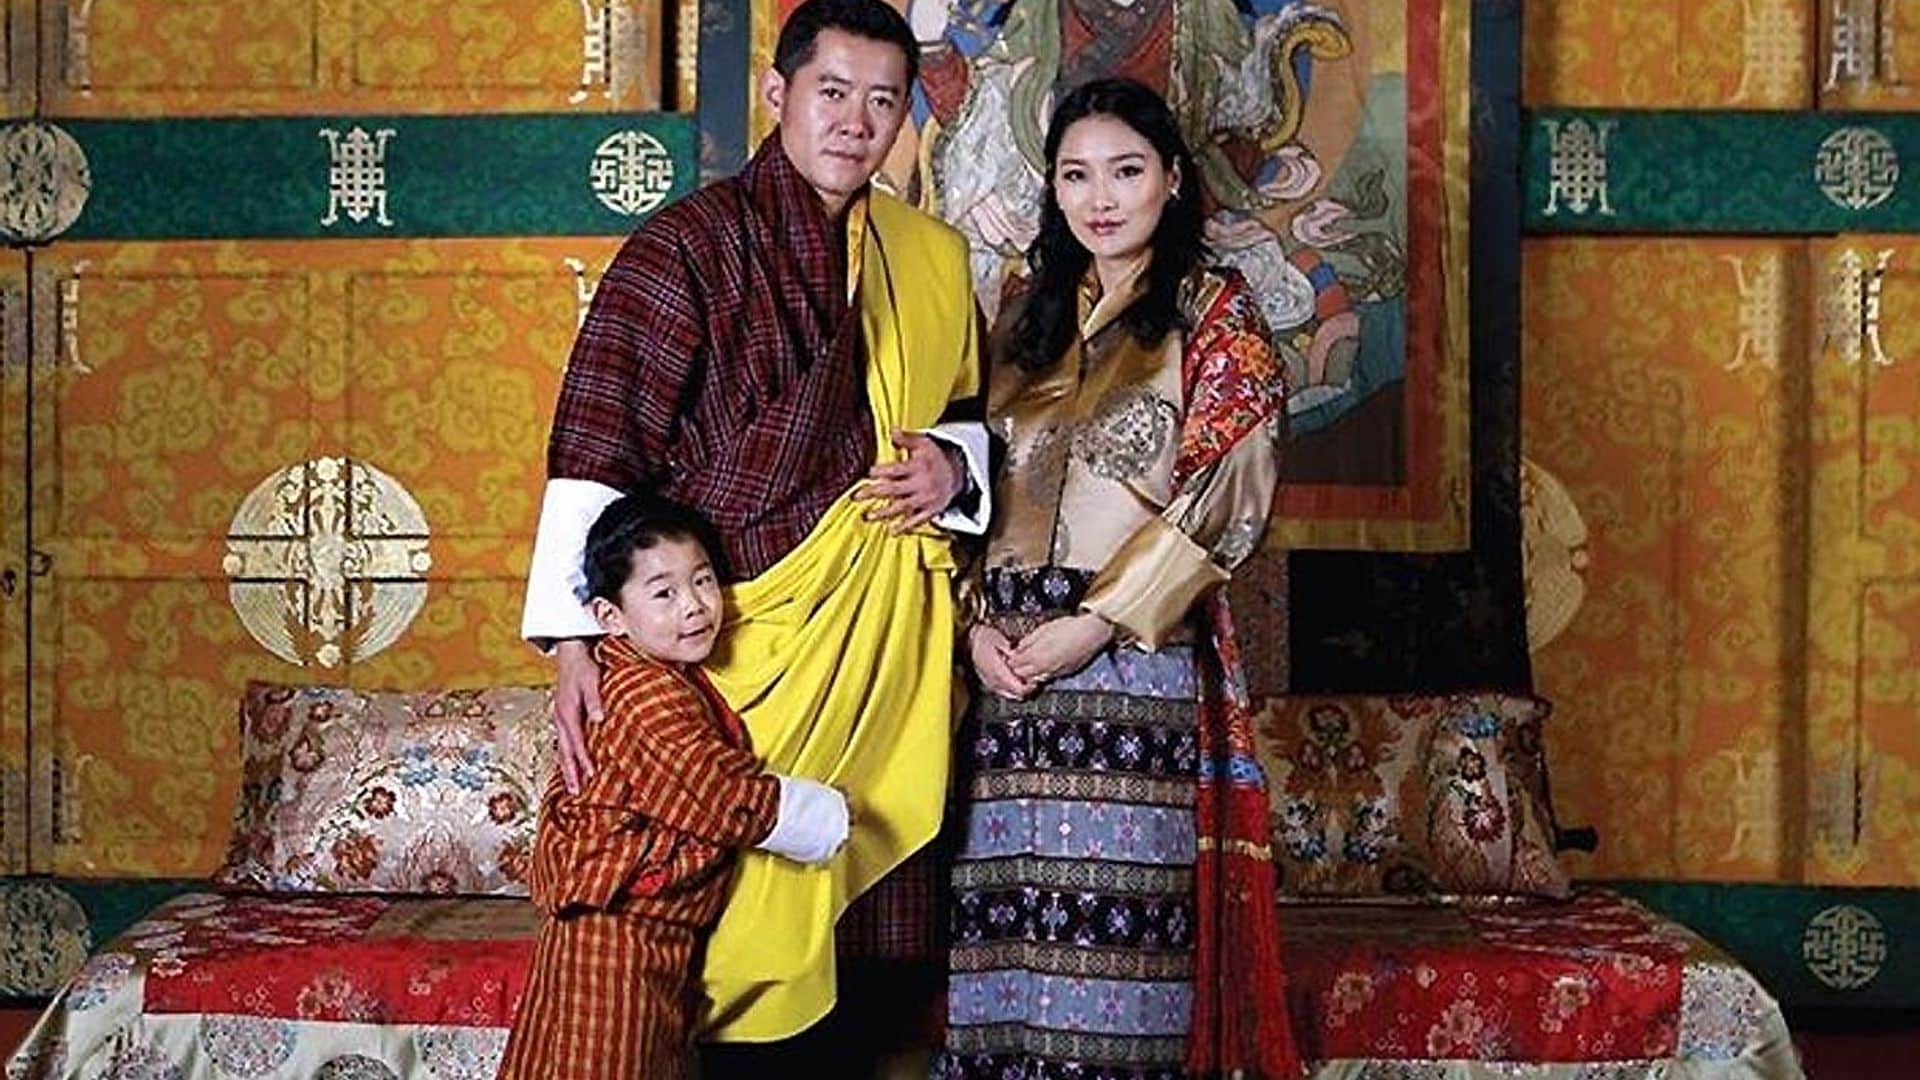 Primera imagen de la reina de Bután embarazada de su segundo hijo